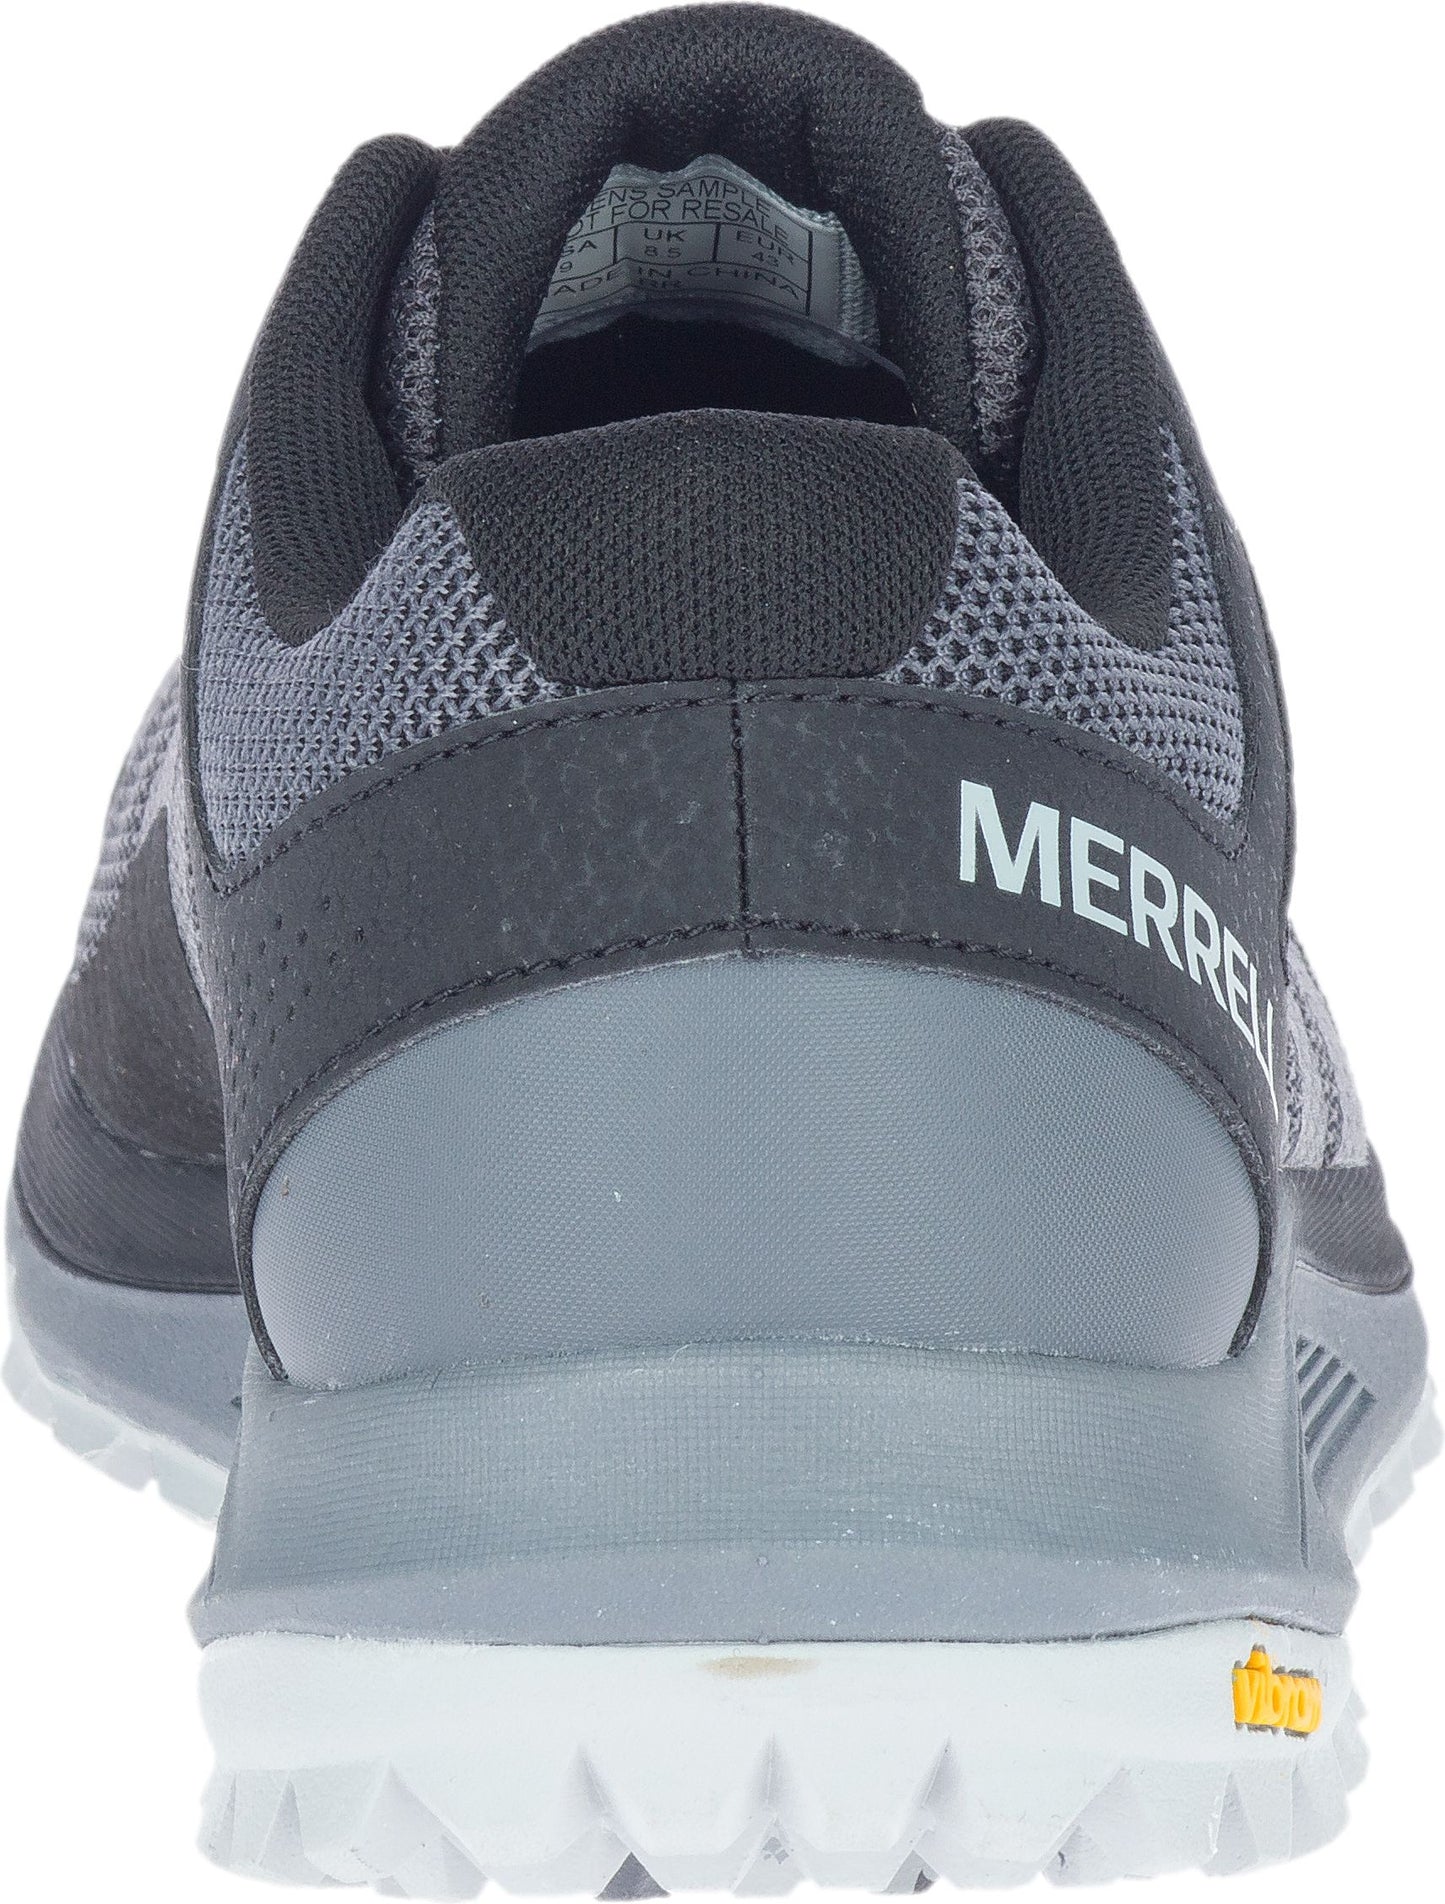 Merrell Shoes Nova 2 Black